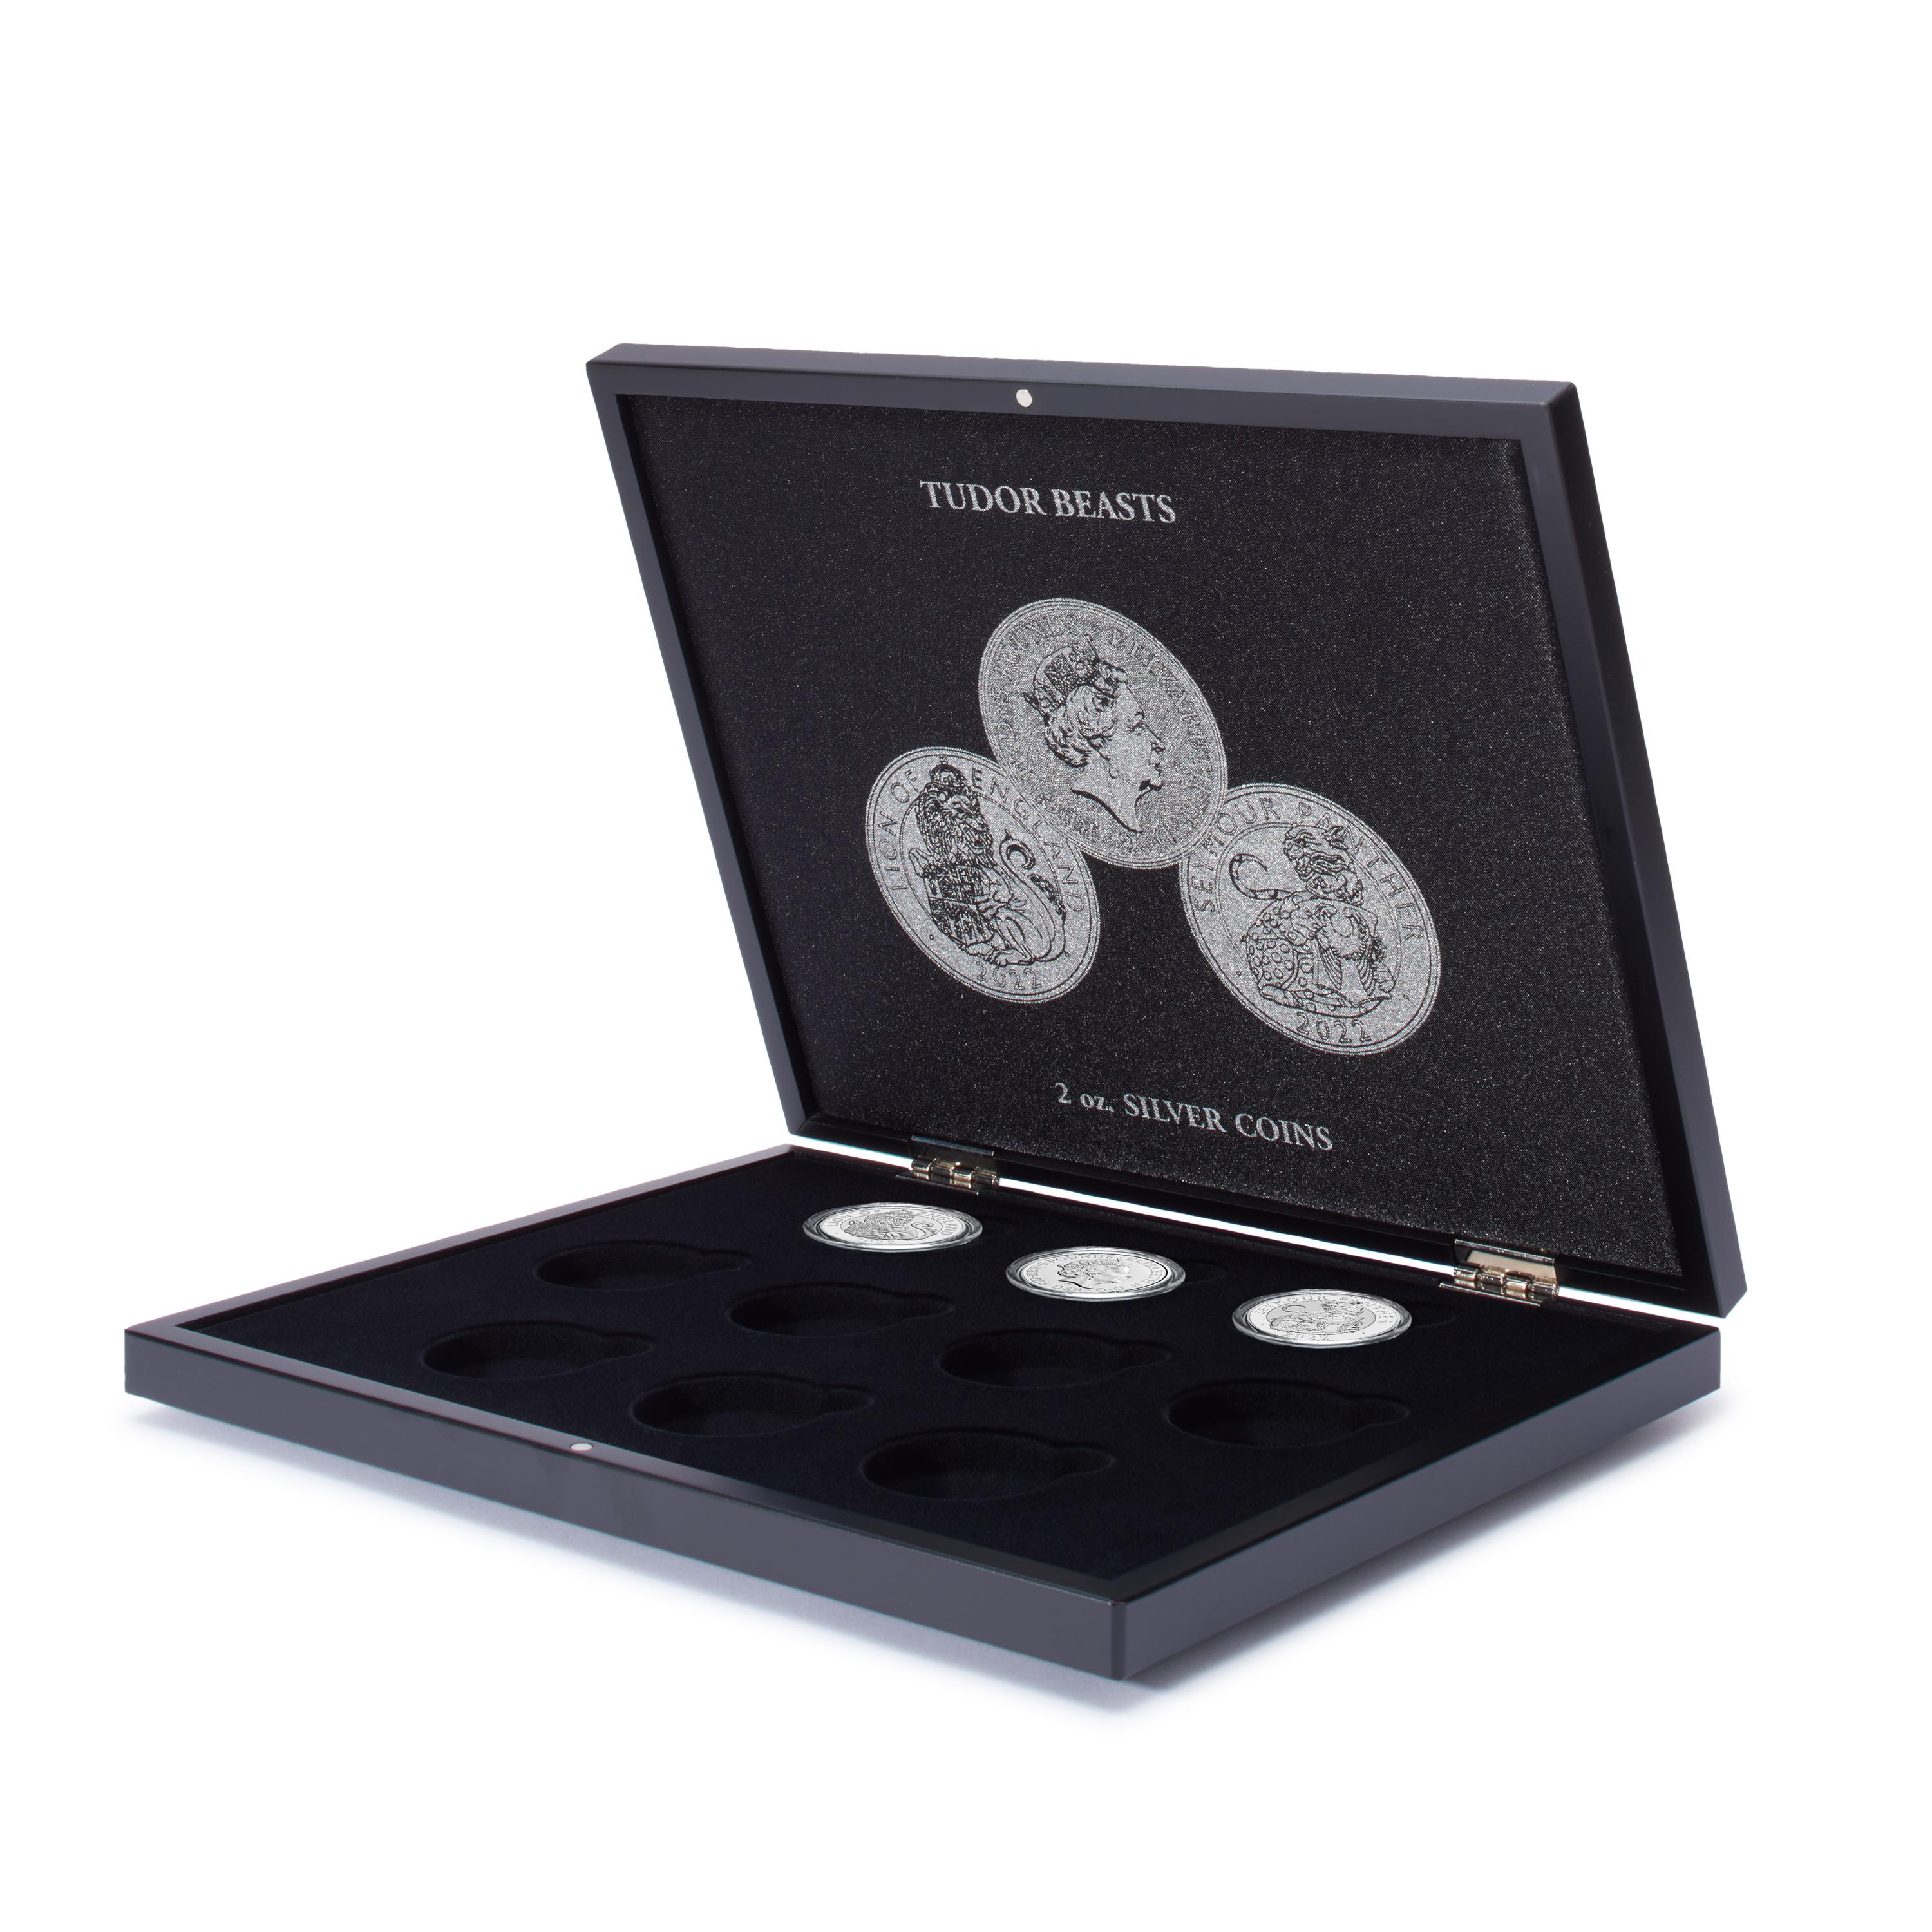 VOLTERRA coin box for 10 “Tudor Beasts” 2oz silver coins